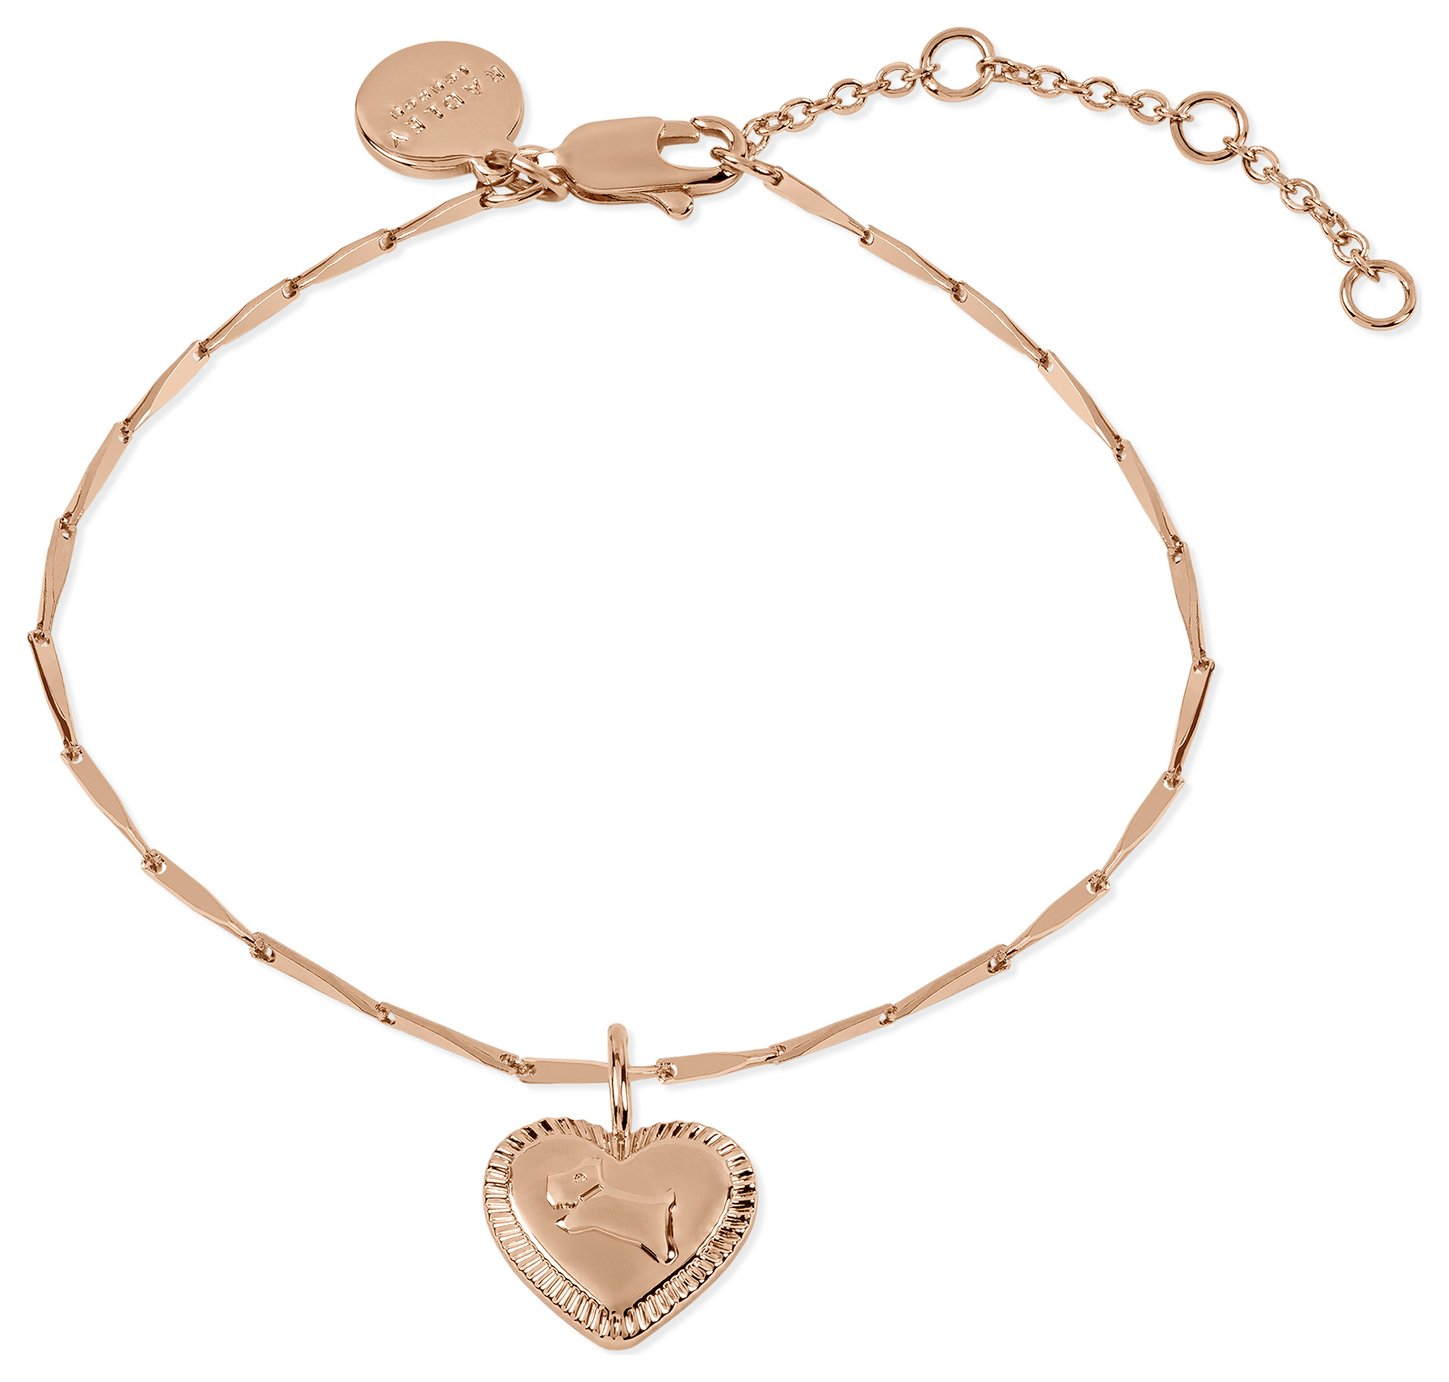 Radley 18ct Rose Gold Plated Heart Dog Charm Bracelet